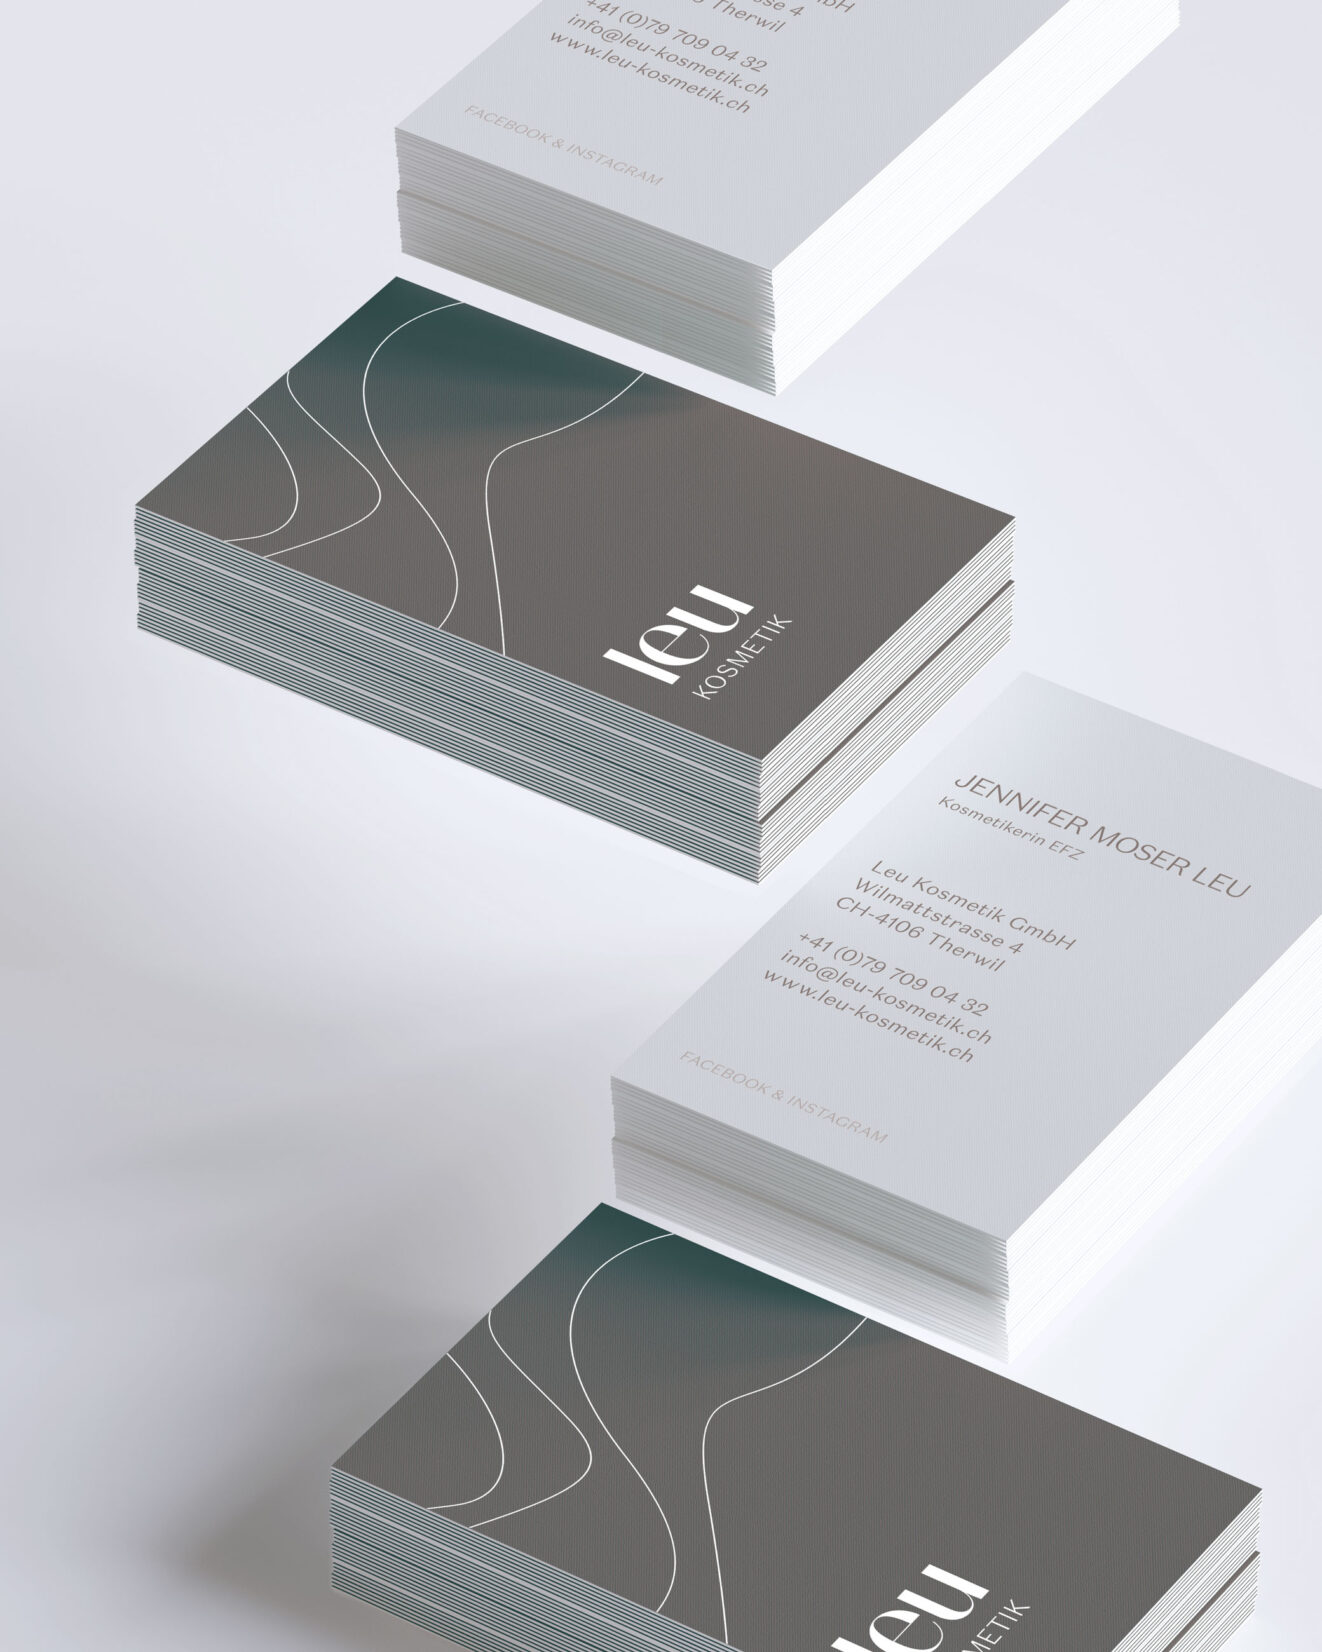 Visitenkarten mit Logo und Grafik-Element gestaltet von Grafikdesign Cueni Basel.